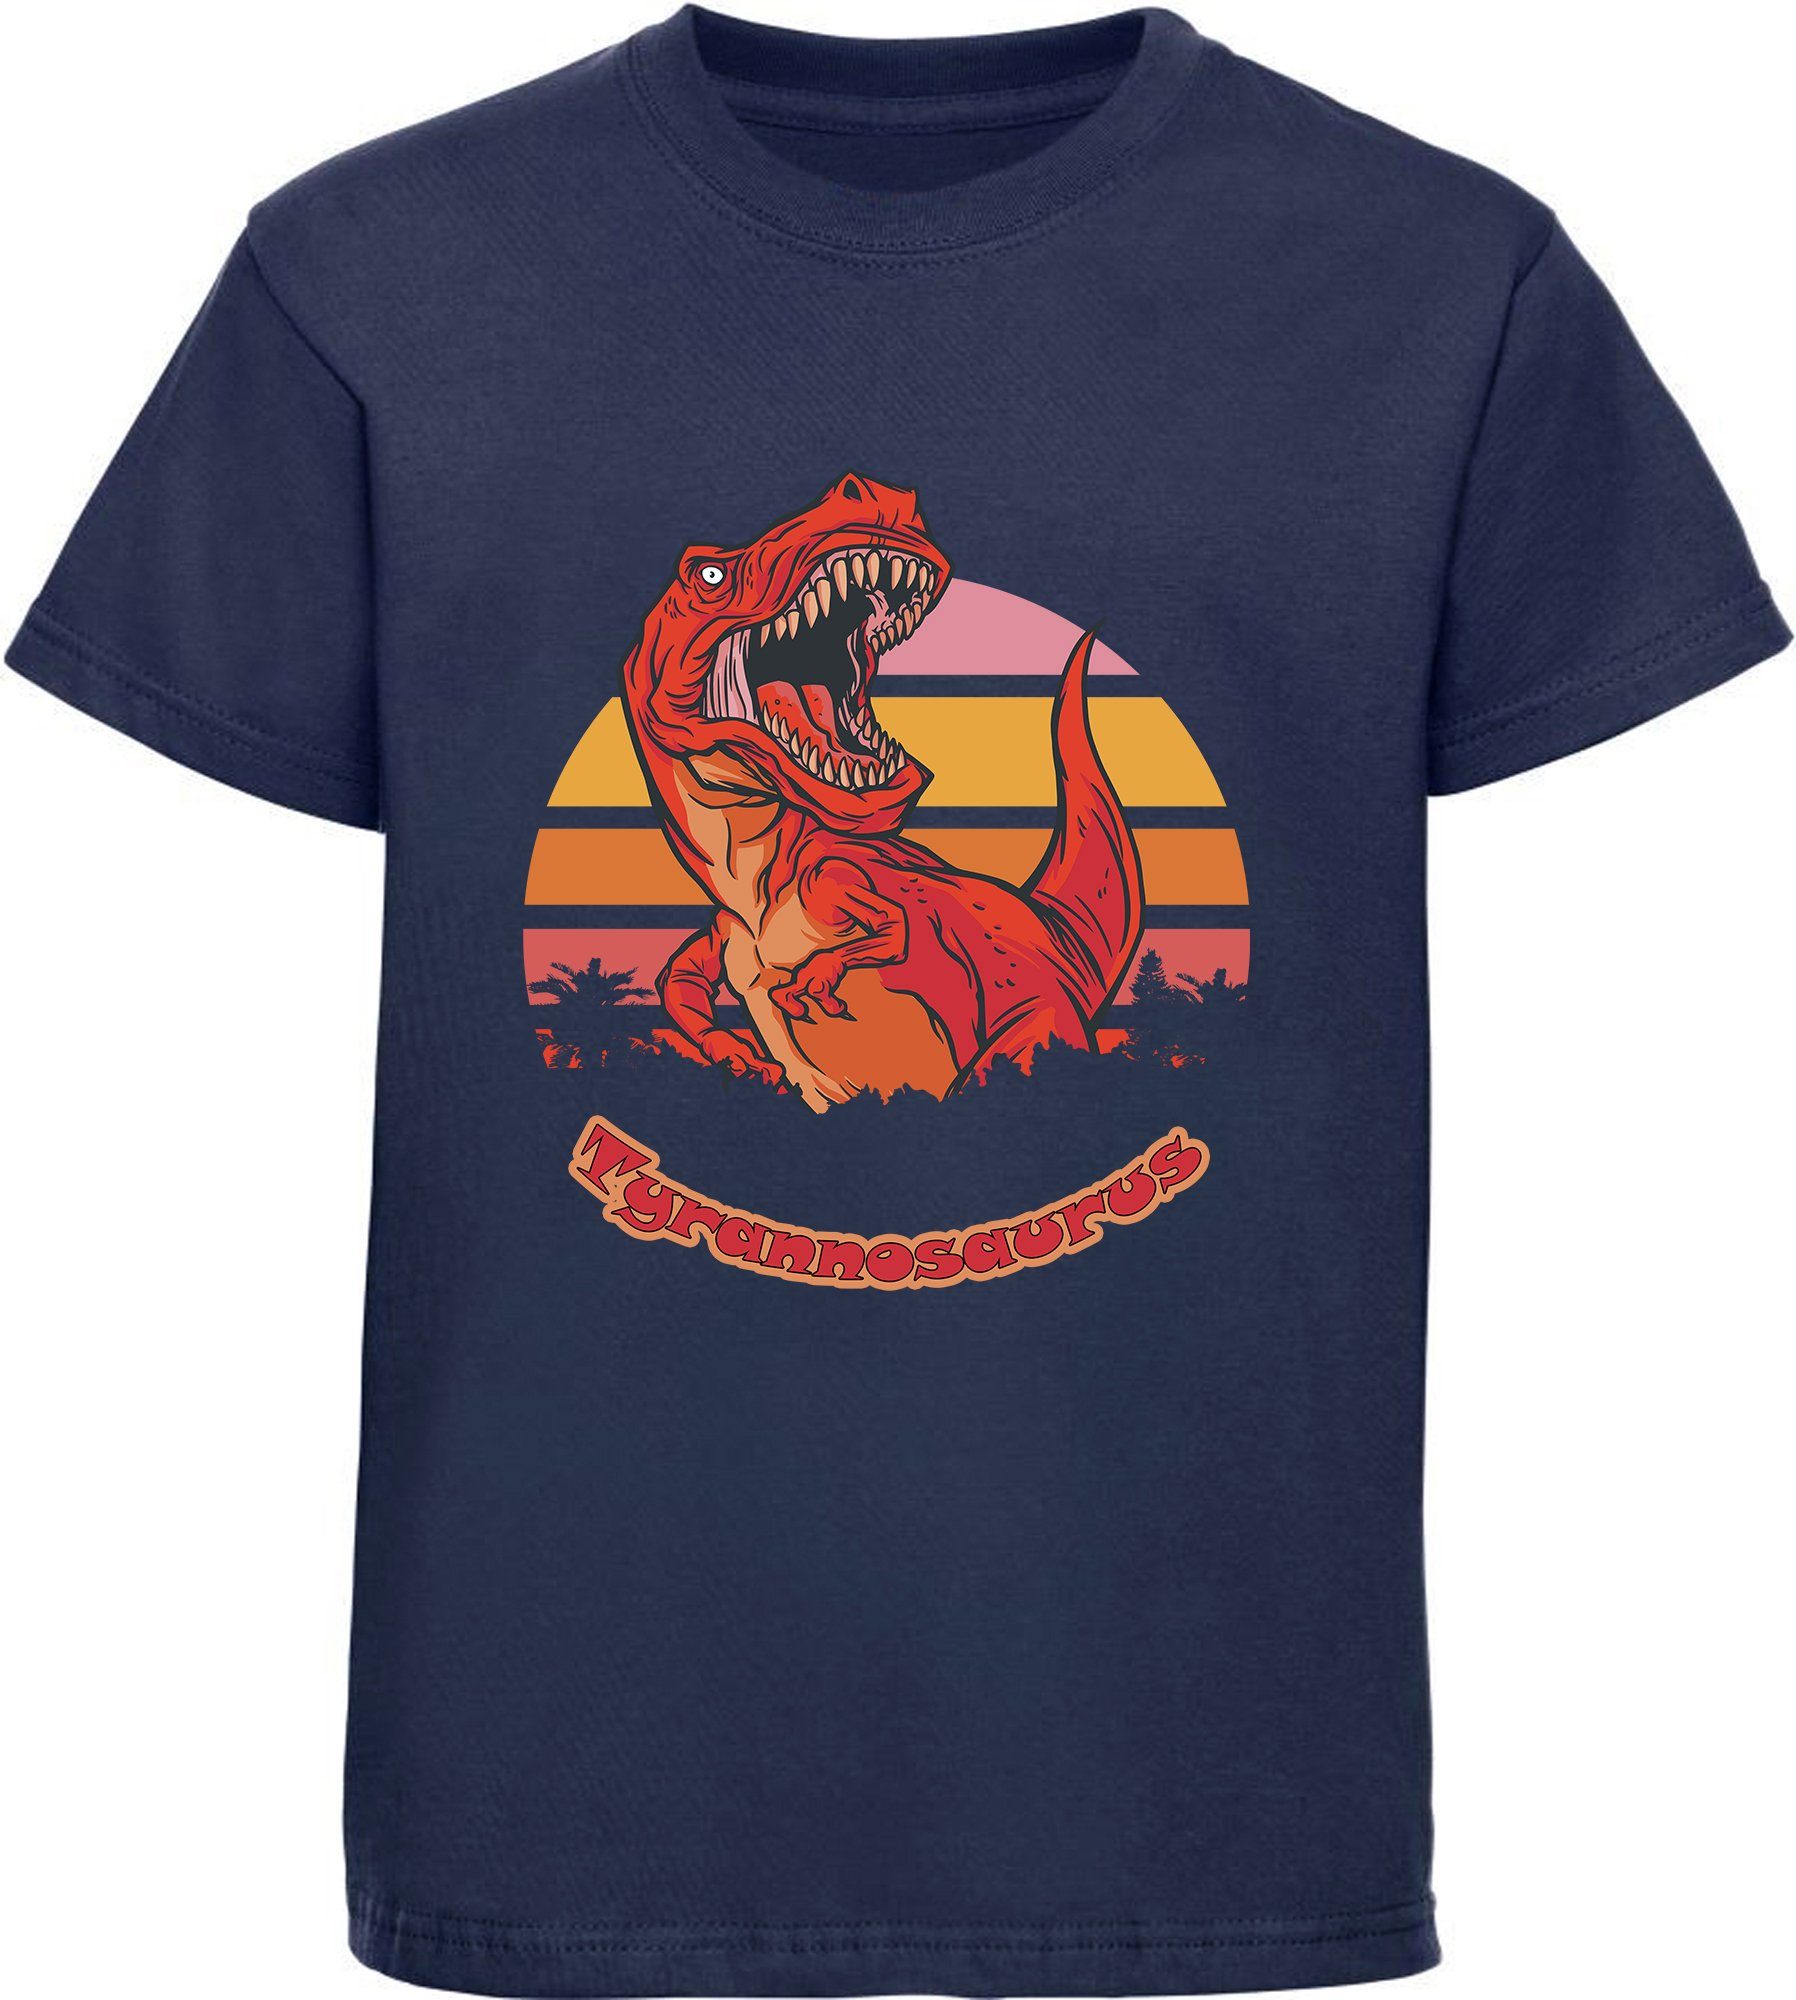 MyDesign24 Print-Shirt bedrucktes Kinder T-Shirt mit roten brüllendem T-Rex Baumwollshirt mit Dino, schwarz, weiß, rot, blau, i100 navy blau | T-Shirts